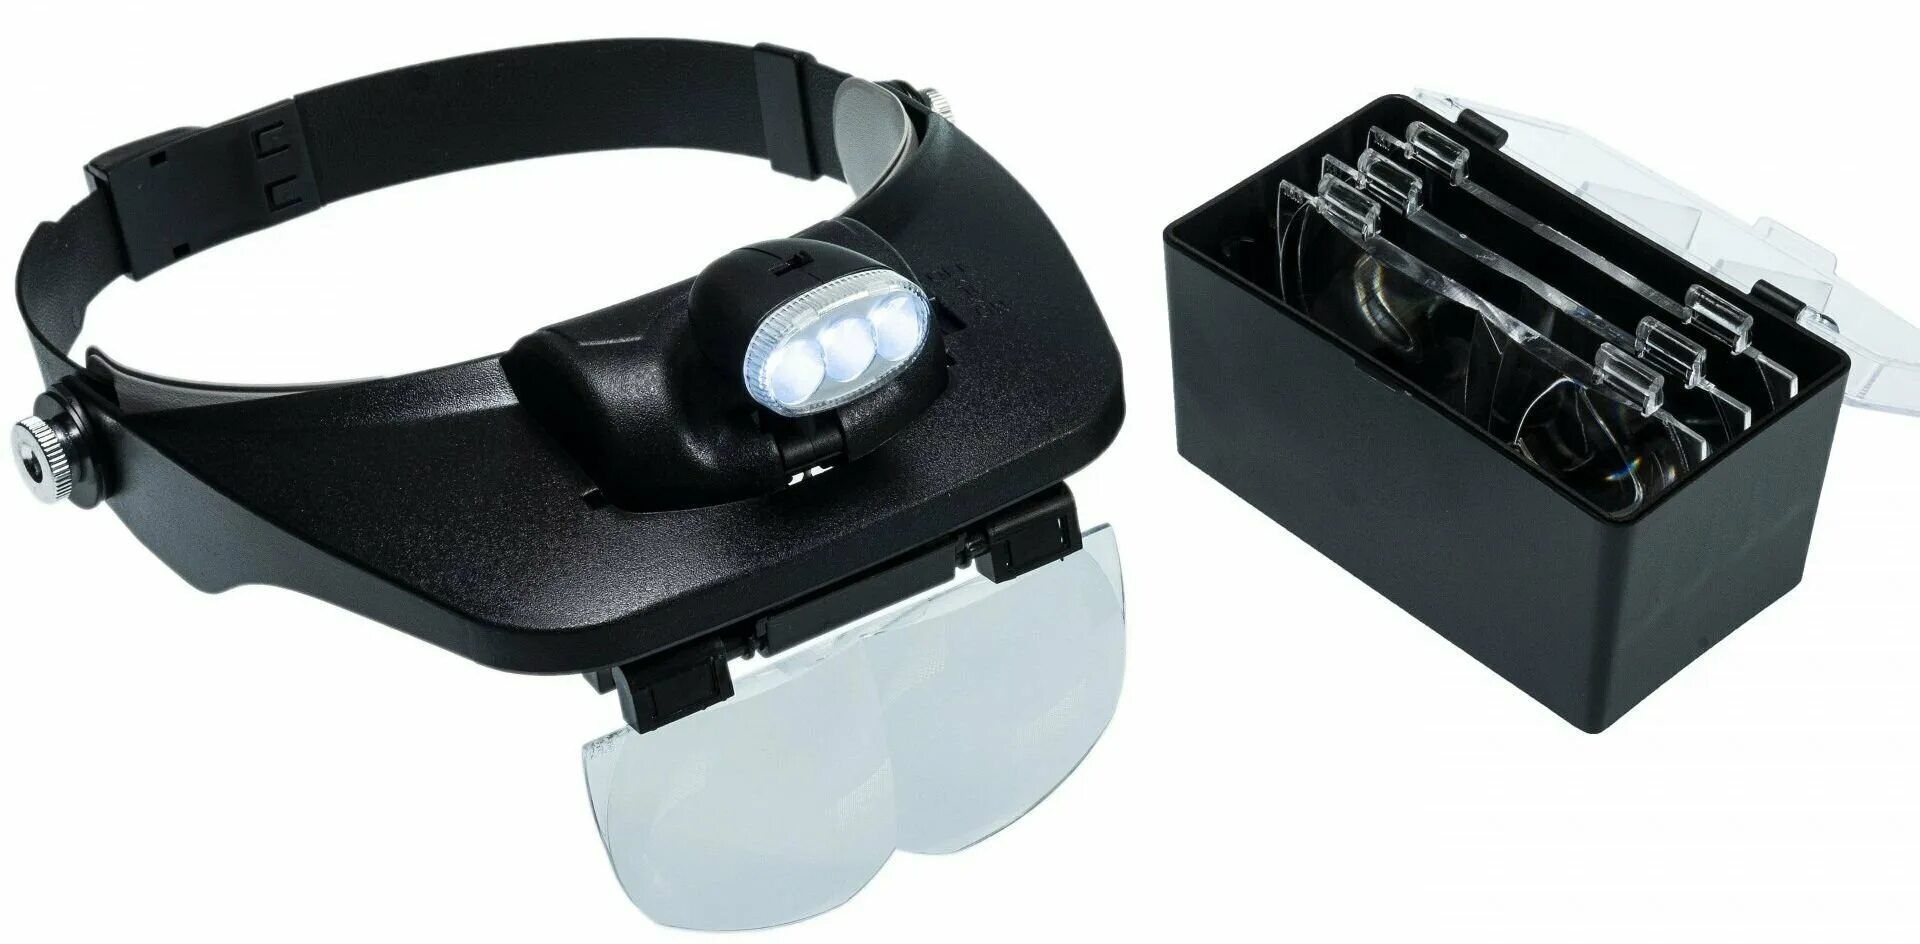 Лупы бинокулярные с подсветкой. Монтажные бинокулярные очки mg81001-. Лупа налобная Kromatech mg81001-a, 1,2/1,8/2,5/3,5х, с подсветкой (2 led). Лупа налобная 20x бинокулярная (очки) с подсветкой (2 led) mg9892a-II. Лупа MG 81001-H С led подсветкой.